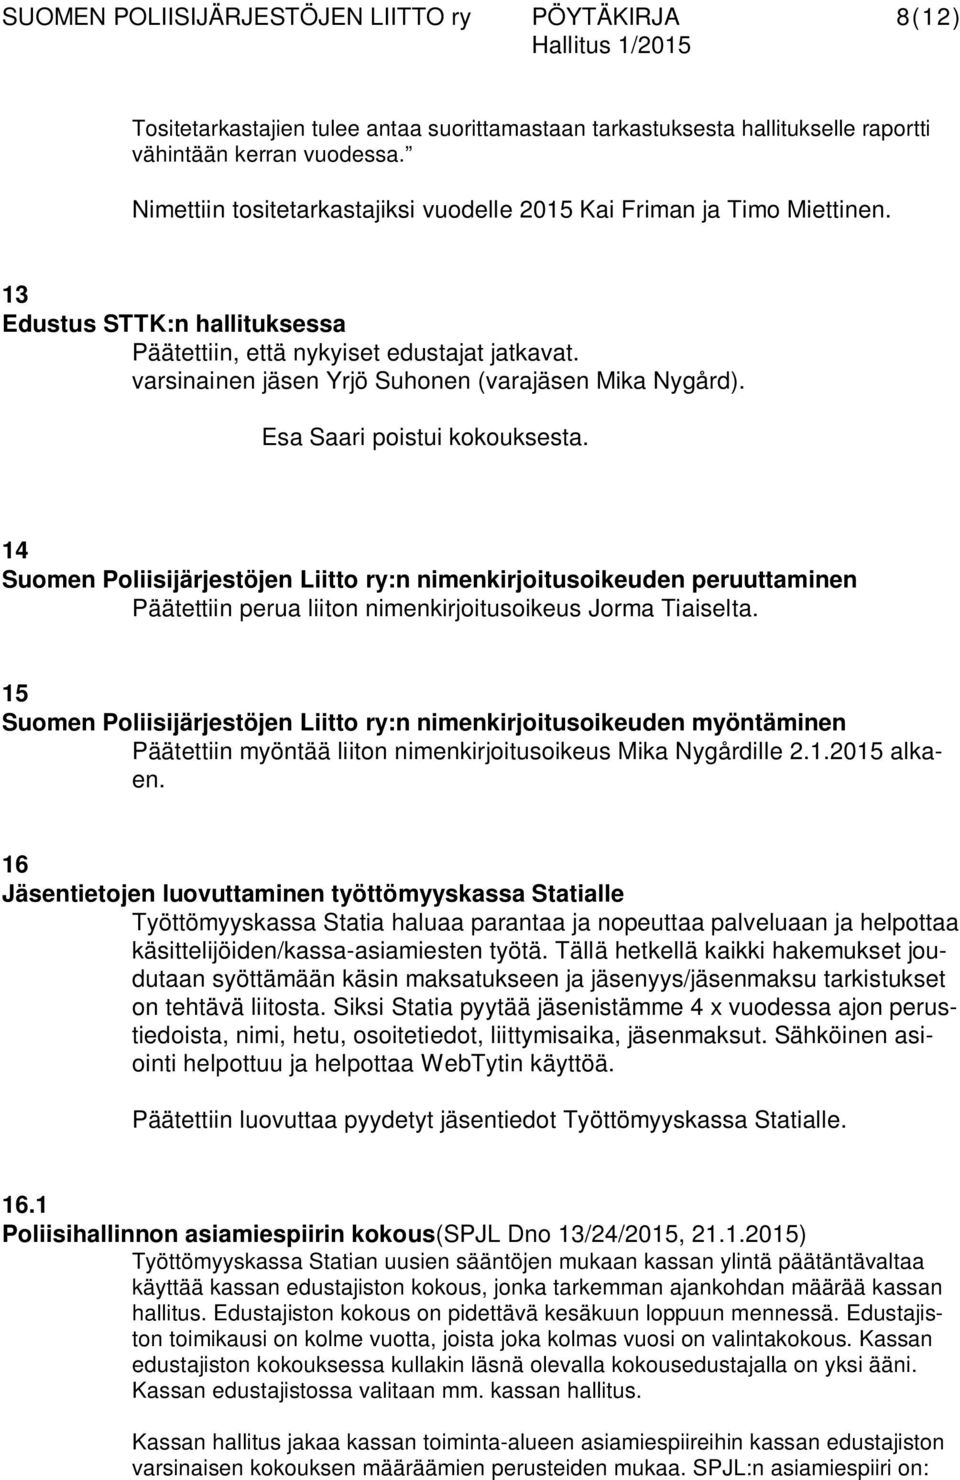 14 Suomen Poliisijärjestöjen Liitto ry:n nimenkirjoitusoikeuden peruuttaminen Päätettiin perua liiton nimenkirjoitusoikeus Jorma Tiaiselta.